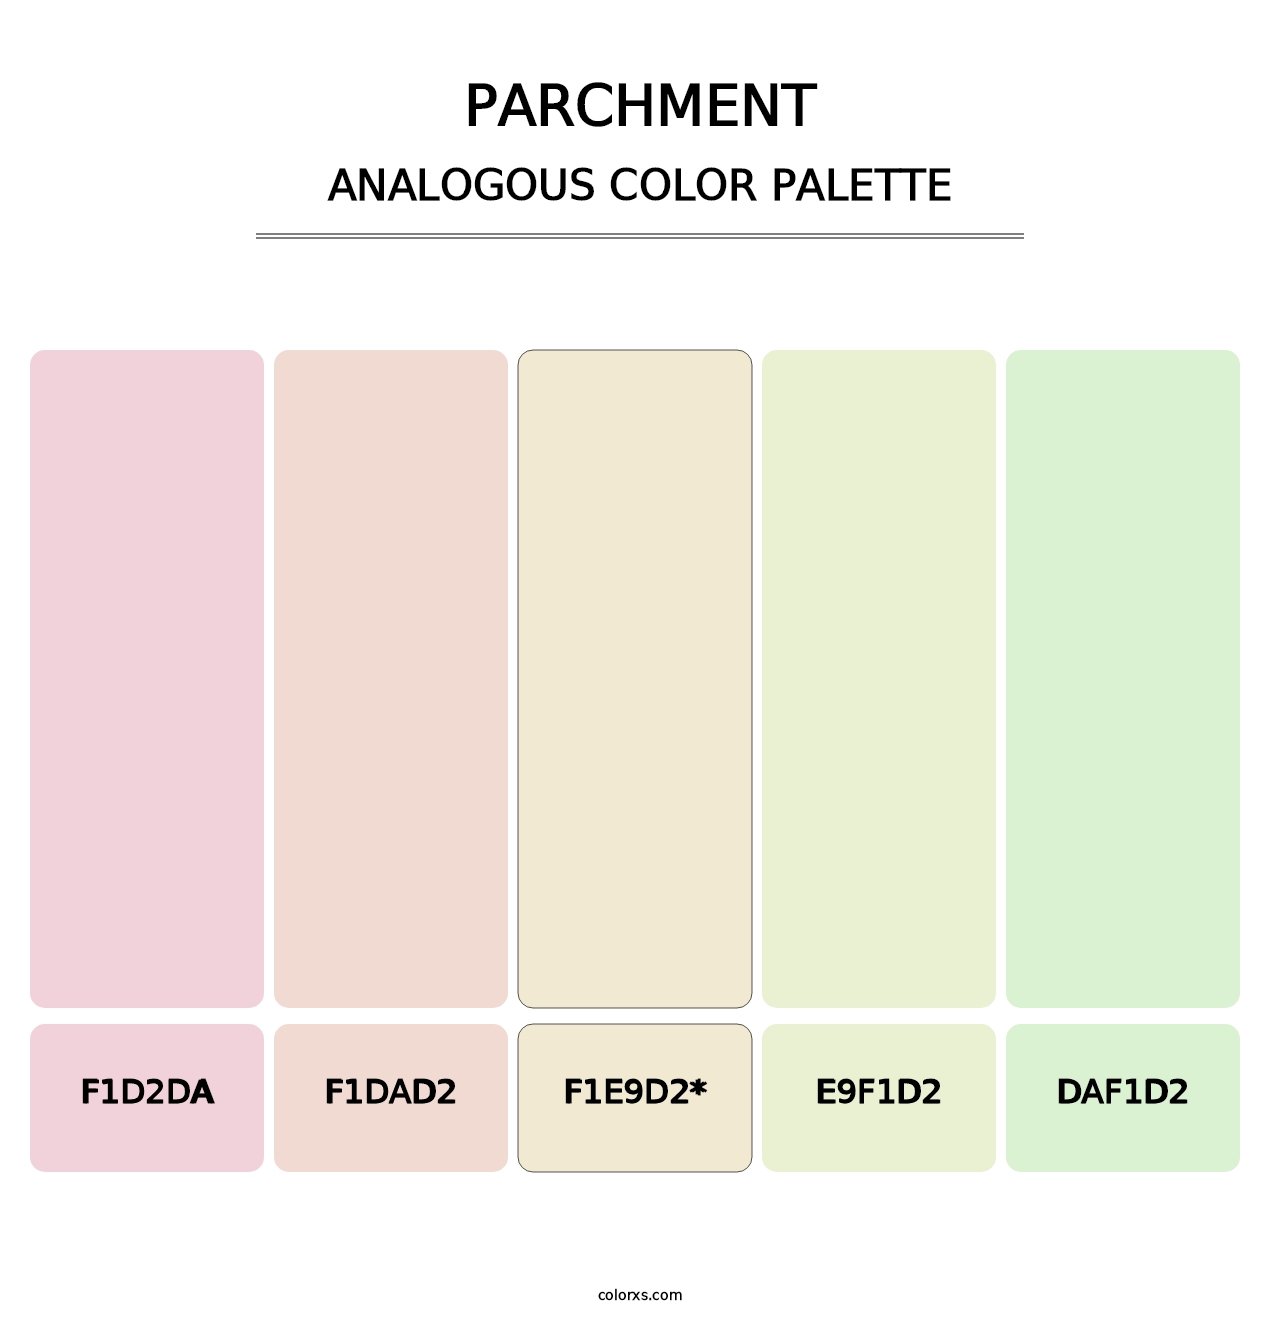 Parchment - Analogous Color Palette